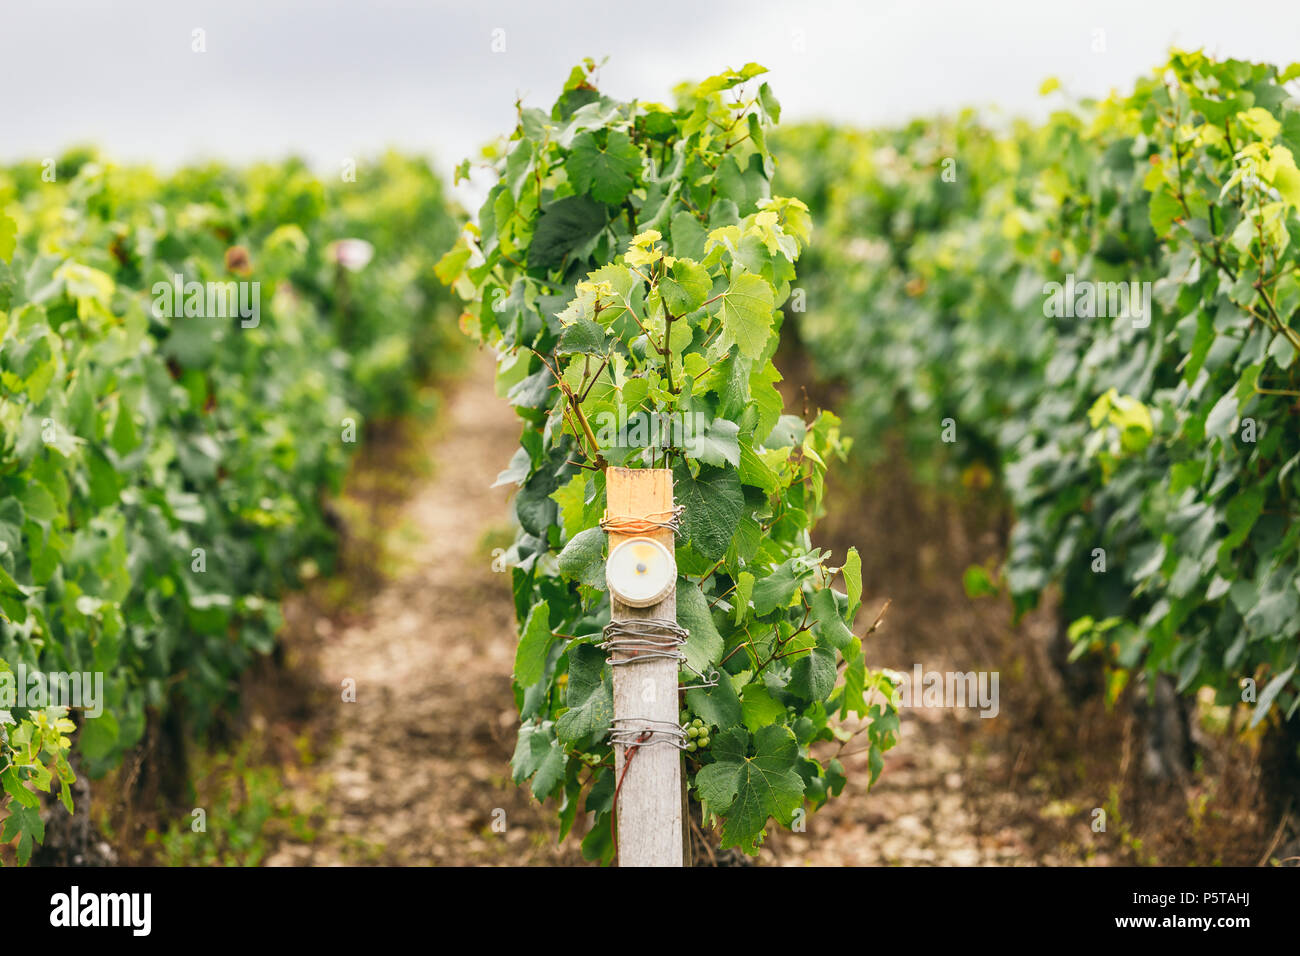 Condizioni di produzione di uva in Francia, sul grapevine speciali sensori sono installati, vinificazione in Chablis Foto Stock